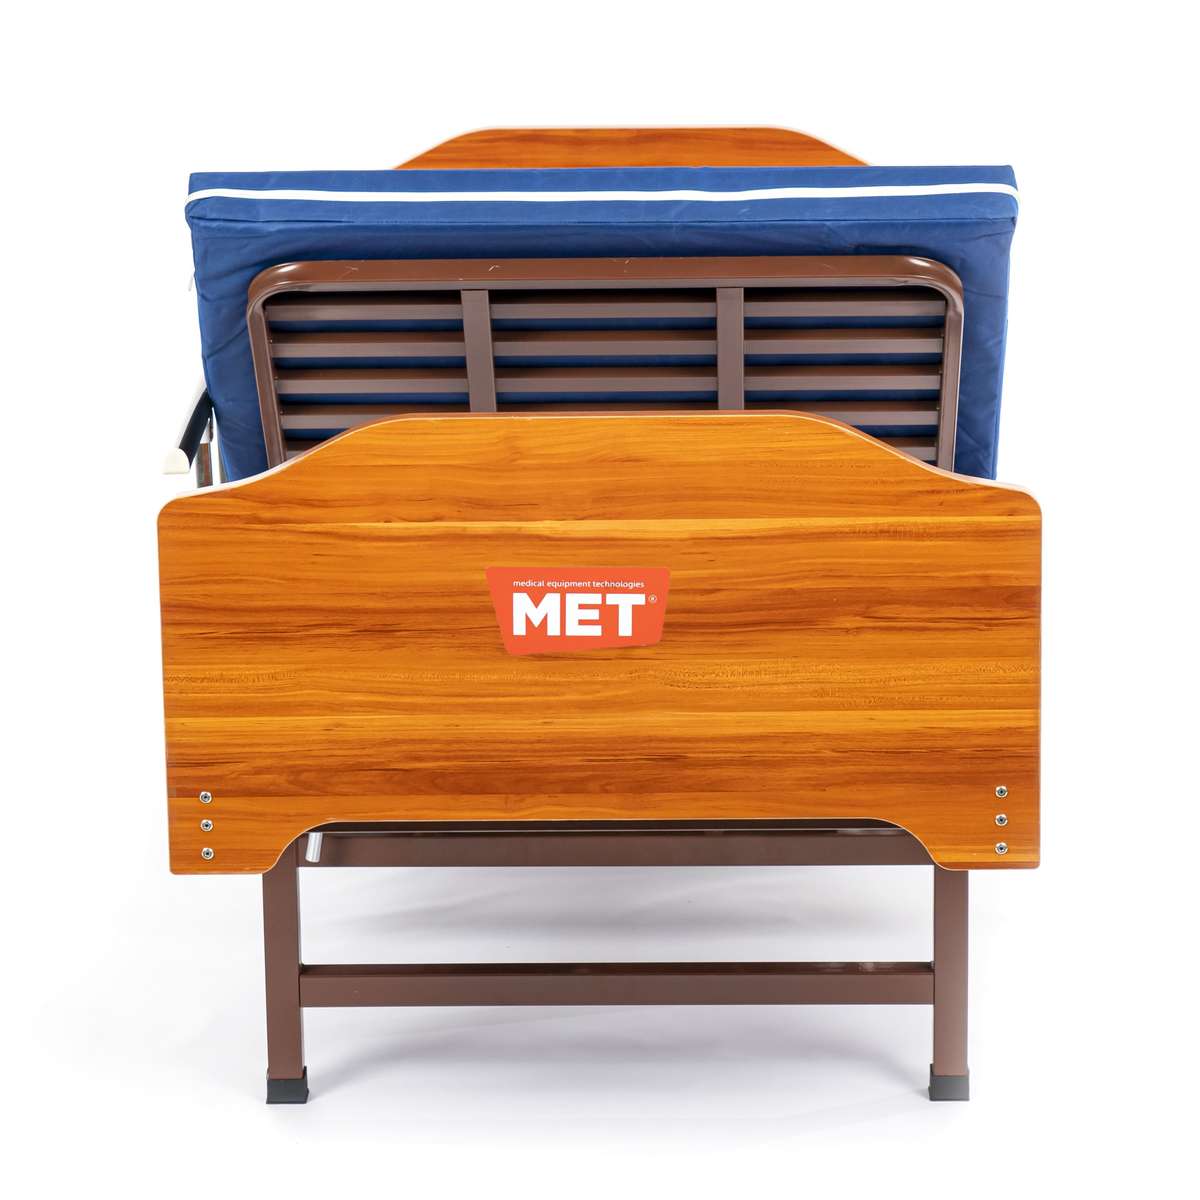 Кровать двух-функциональная медицинская, со складными боковыми ограждениями, на ножках MET TARYS 19563